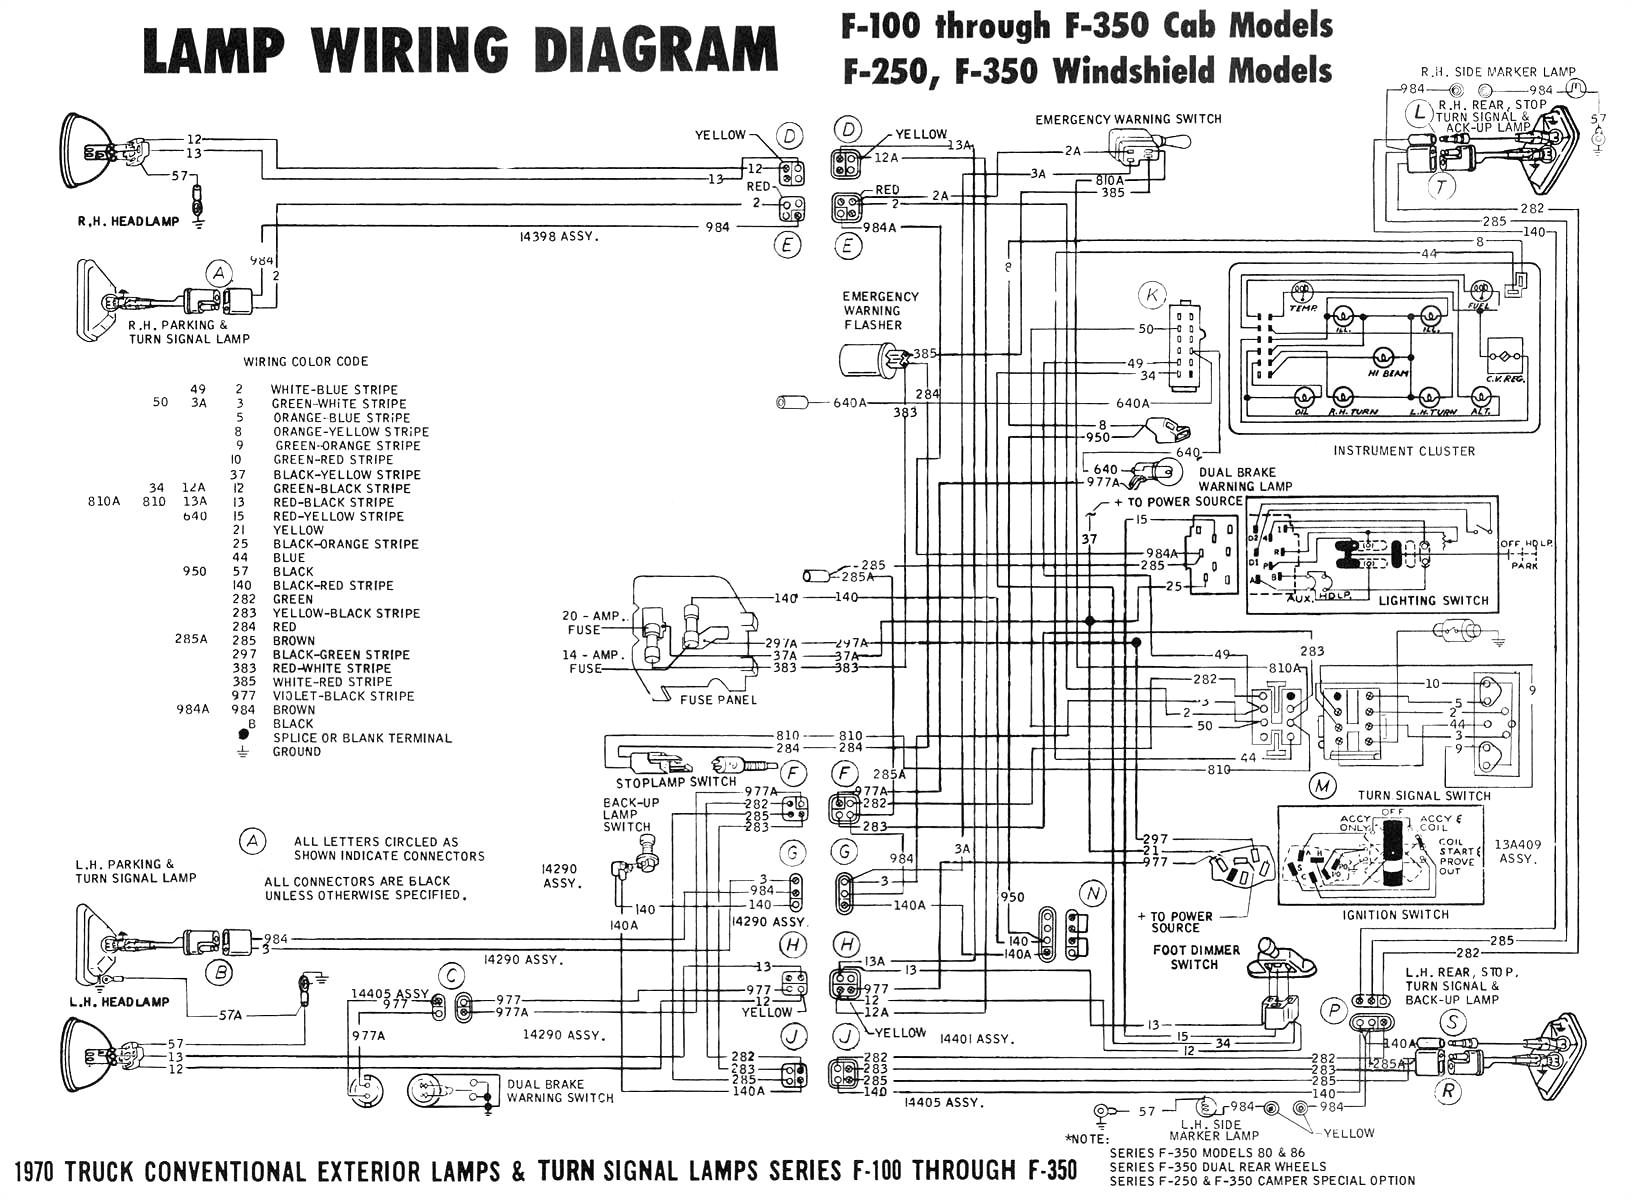 c6 wiring diagrams wiring diagram technic mix c6 wiring diagrams ecu wiring diagramc6 wiring diagrams ecu